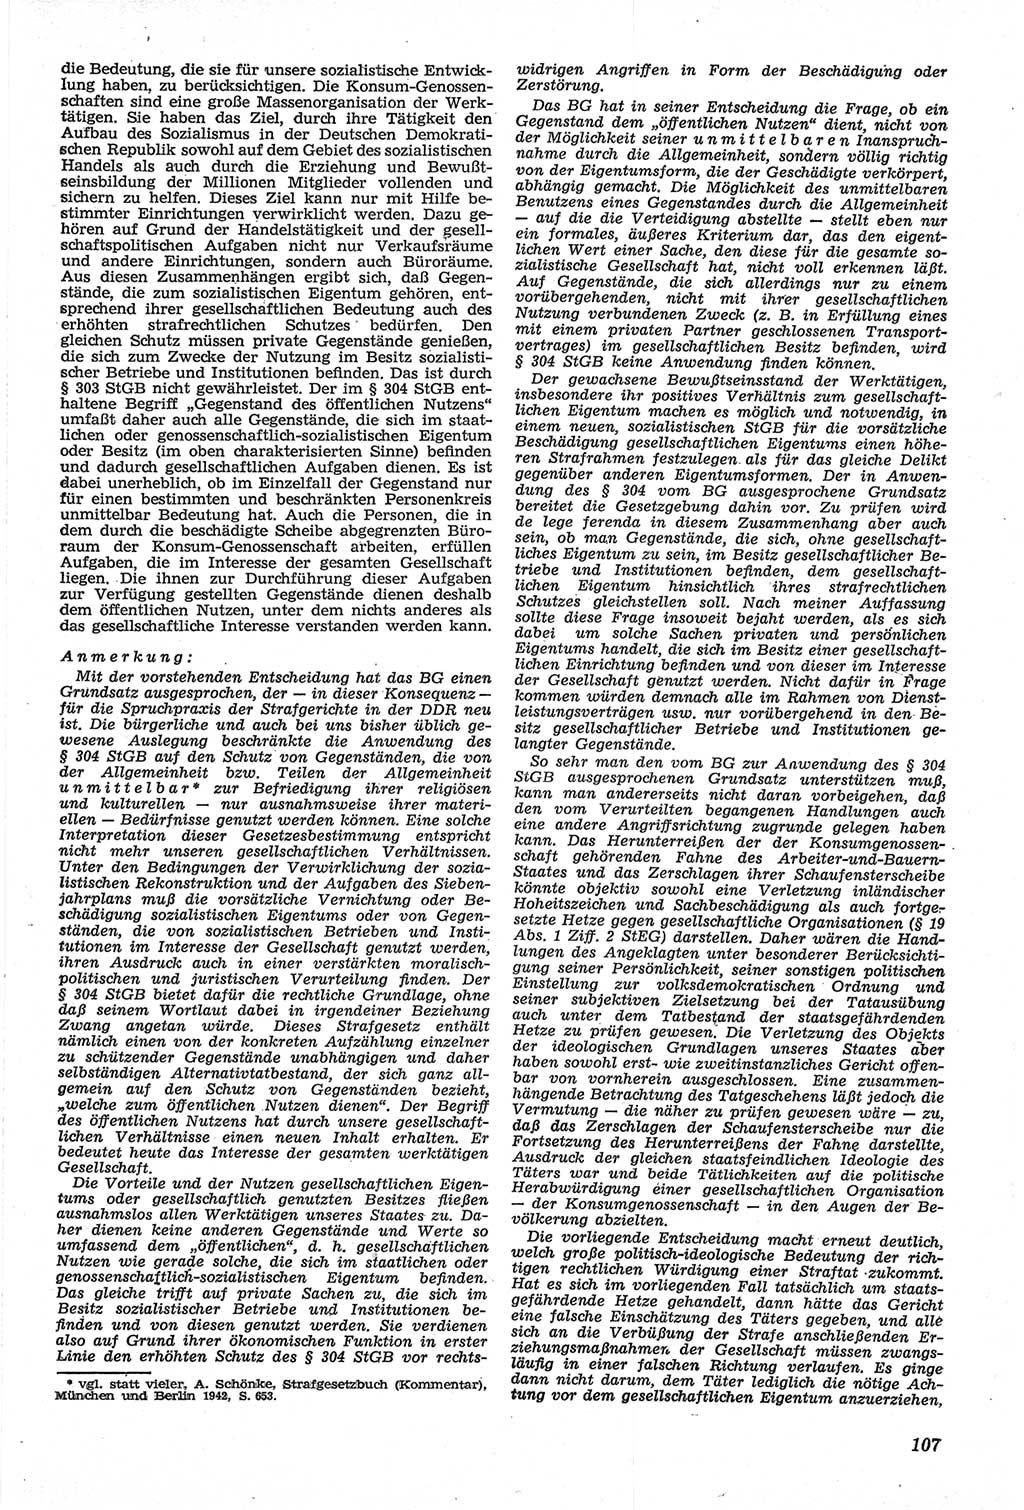 Neue Justiz (NJ), Zeitschrift für Recht und Rechtswissenschaft [Deutsche Demokratische Republik (DDR)], 14. Jahrgang 1960, Seite 107 (NJ DDR 1960, S. 107)